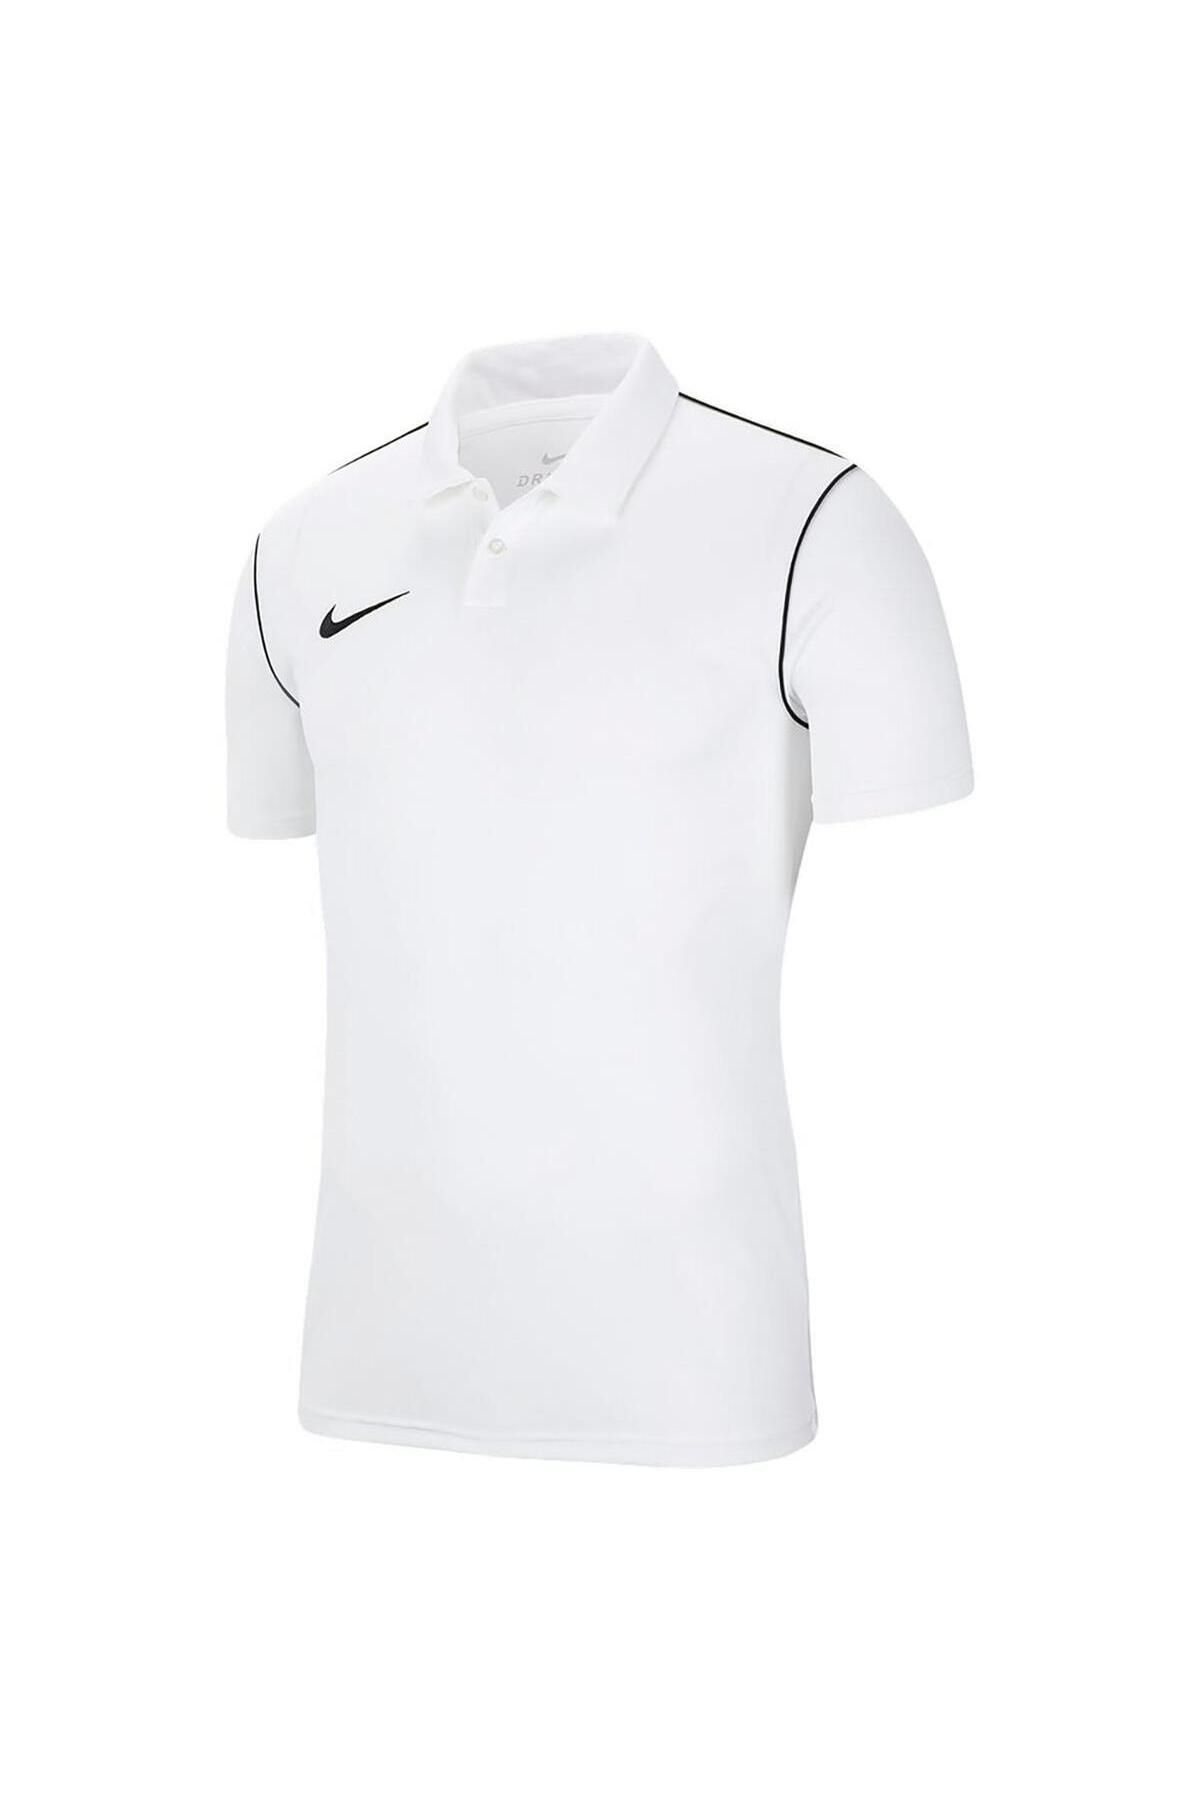 Nike Dry Park Erkek Beyaz Futbol Polo Tişört Bv6879-100